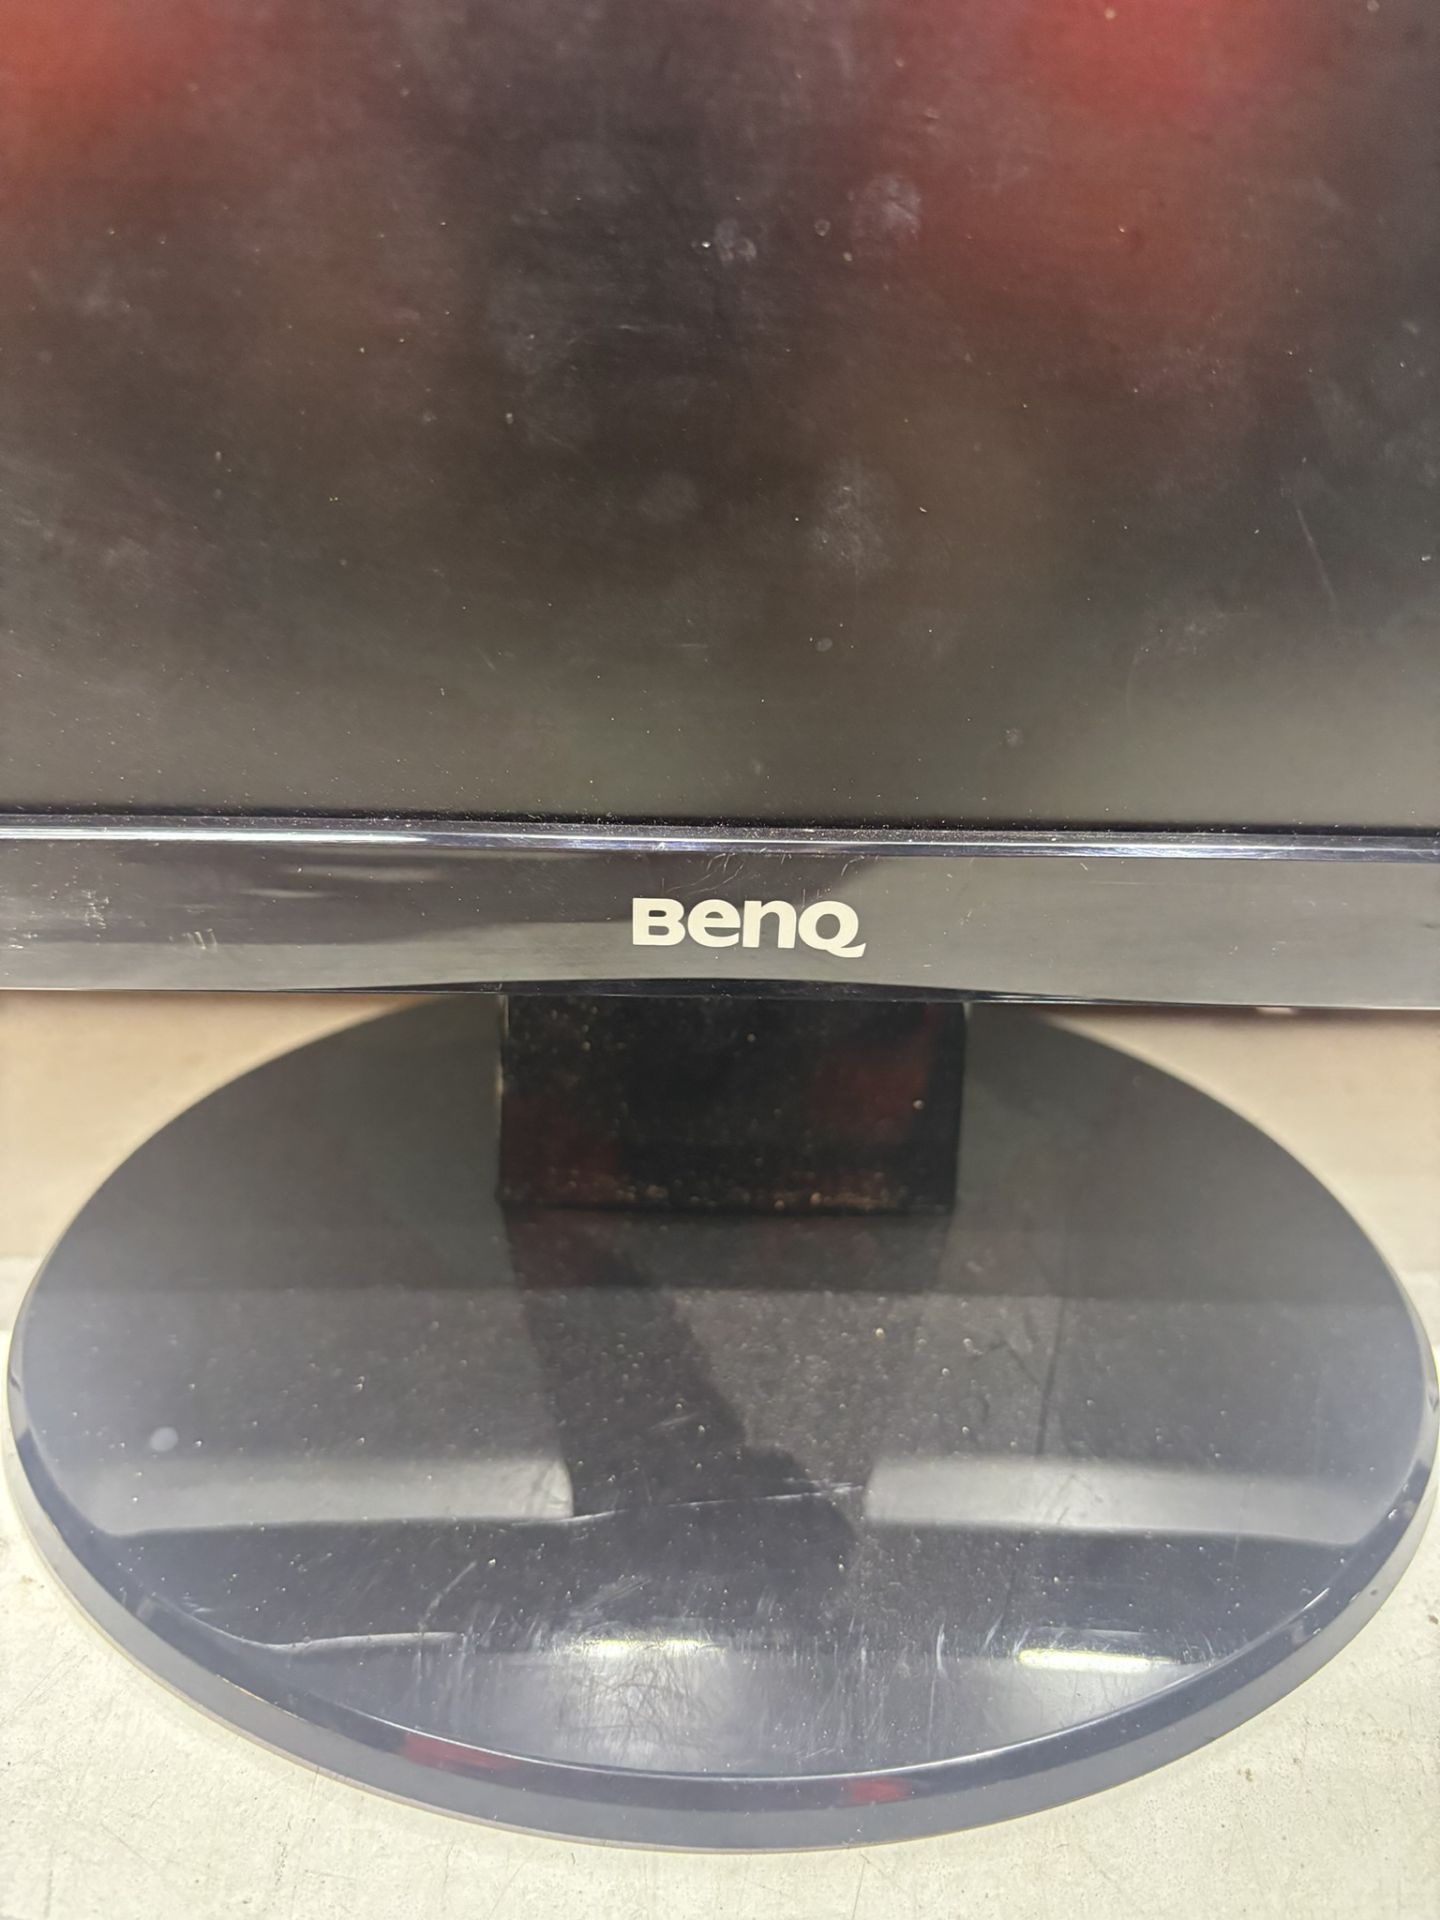 2 x BenQ GL2250 21.5 inch LCD Monitors - Image 4 of 8